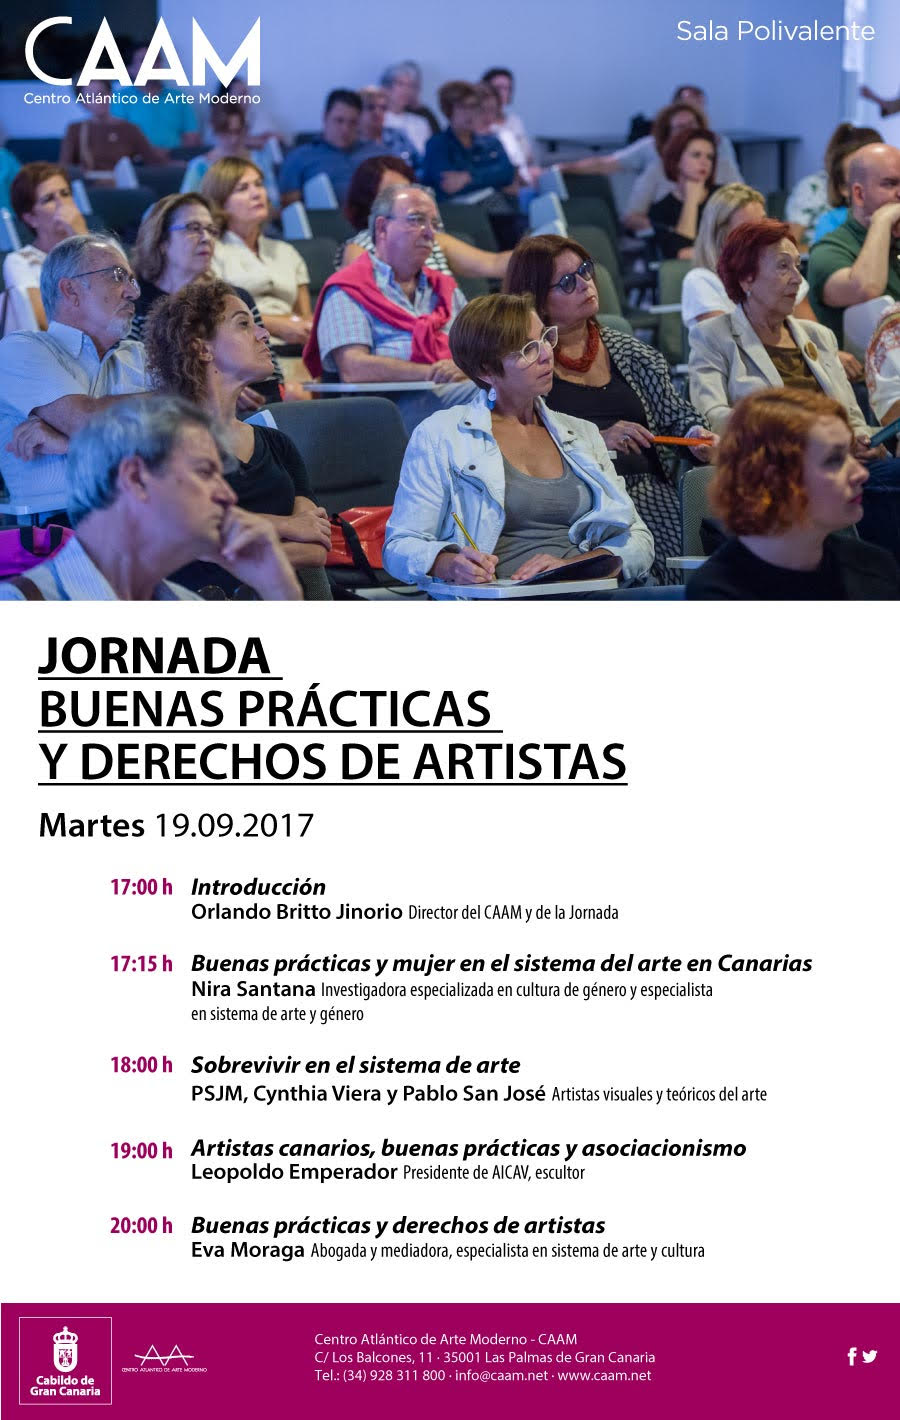 Jornada 'Buenas Prácticas y Derechos de Artistas' en el CAAM